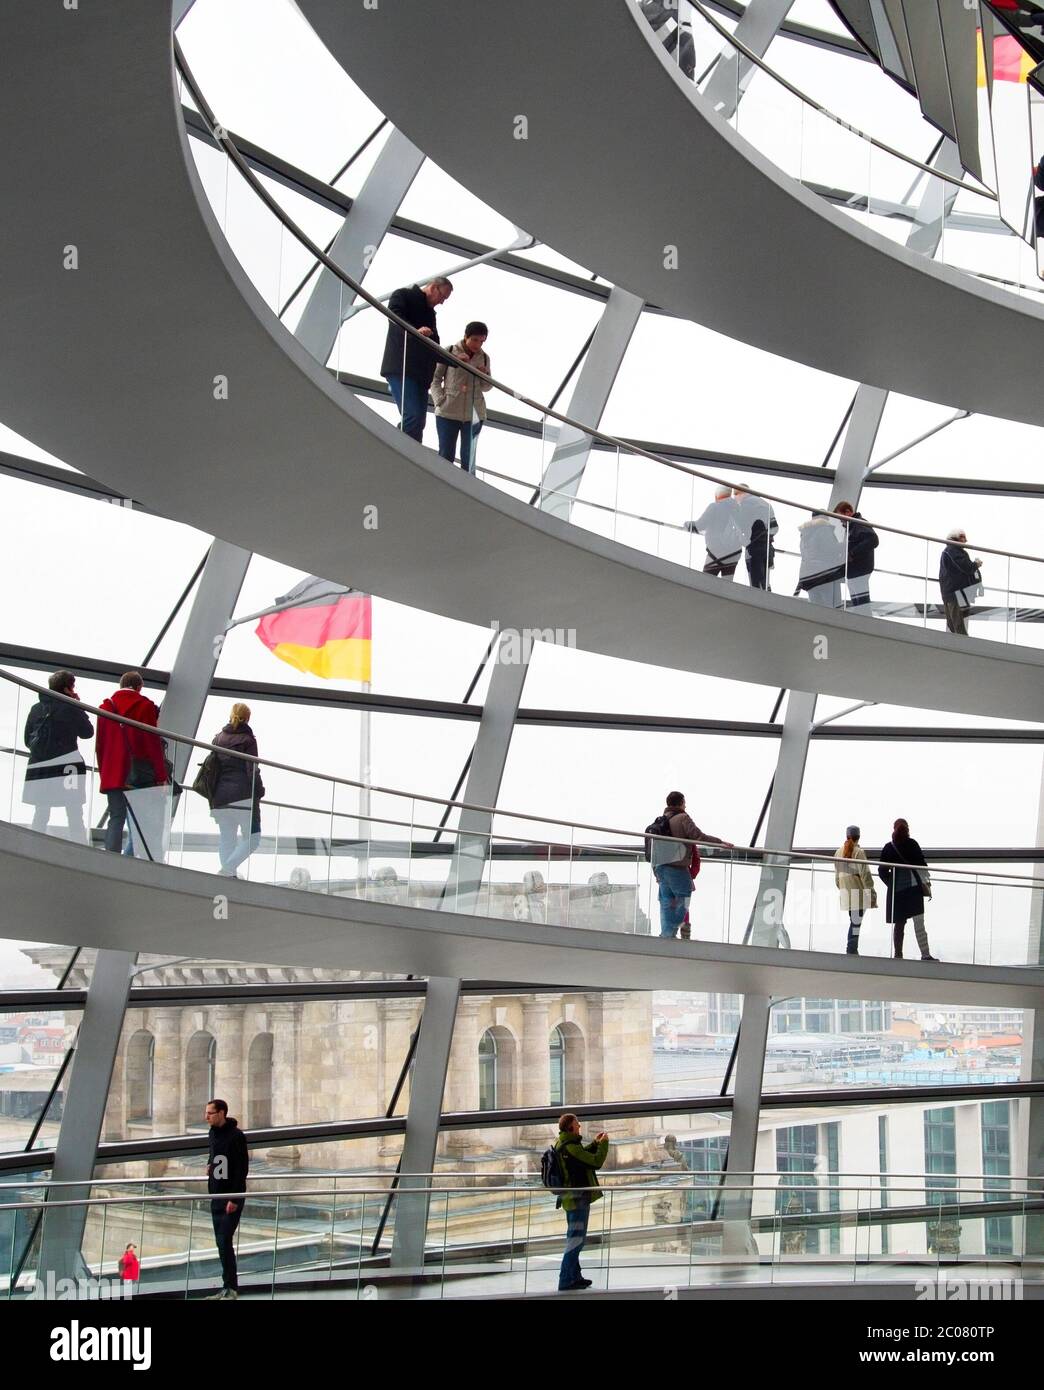 Reichstag dome interior Stock Photo